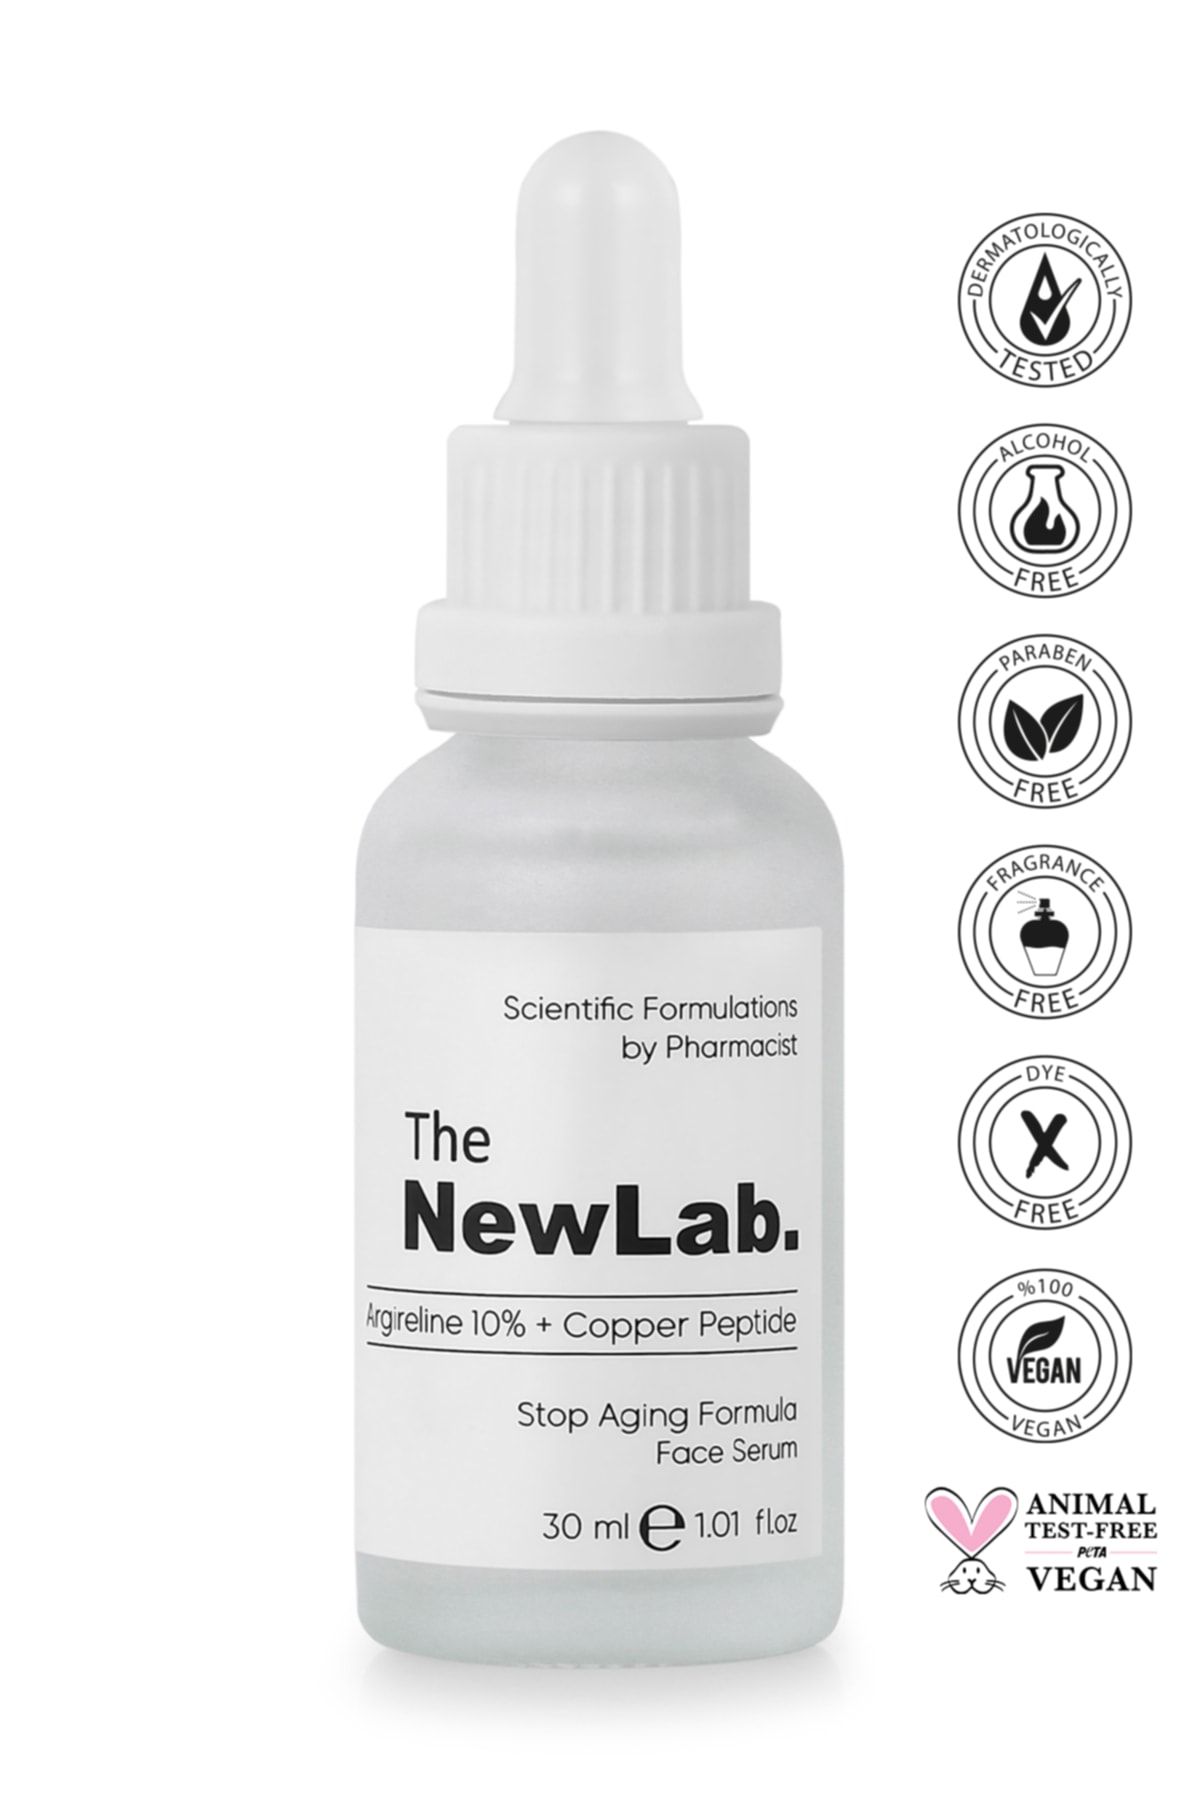 The NewLab Yaşlanma, Kaz Ayakları & Kırışıklık Karşıtı Peptit Yüz Serumu 30 ml (10% ARGİRELİNE PEPTİDE)